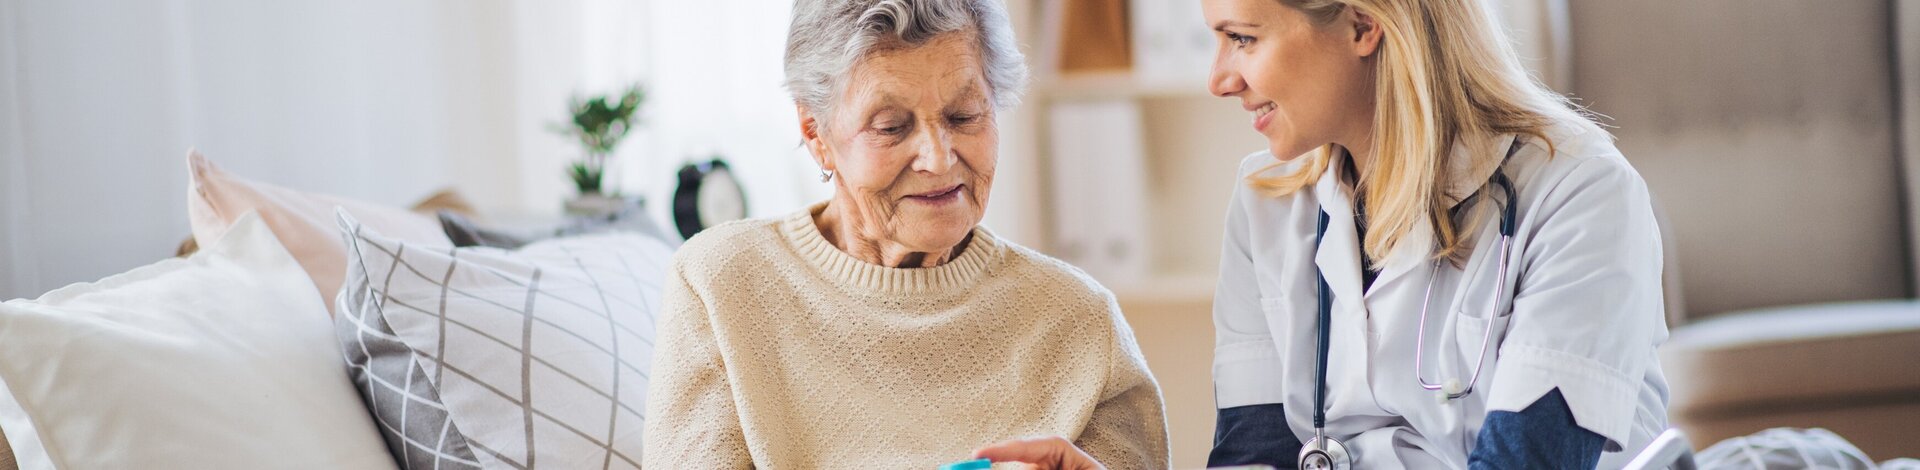 Praxisassistentin erklärt älterer Dame eine Medikation und hält ein Tablet in der Hand.